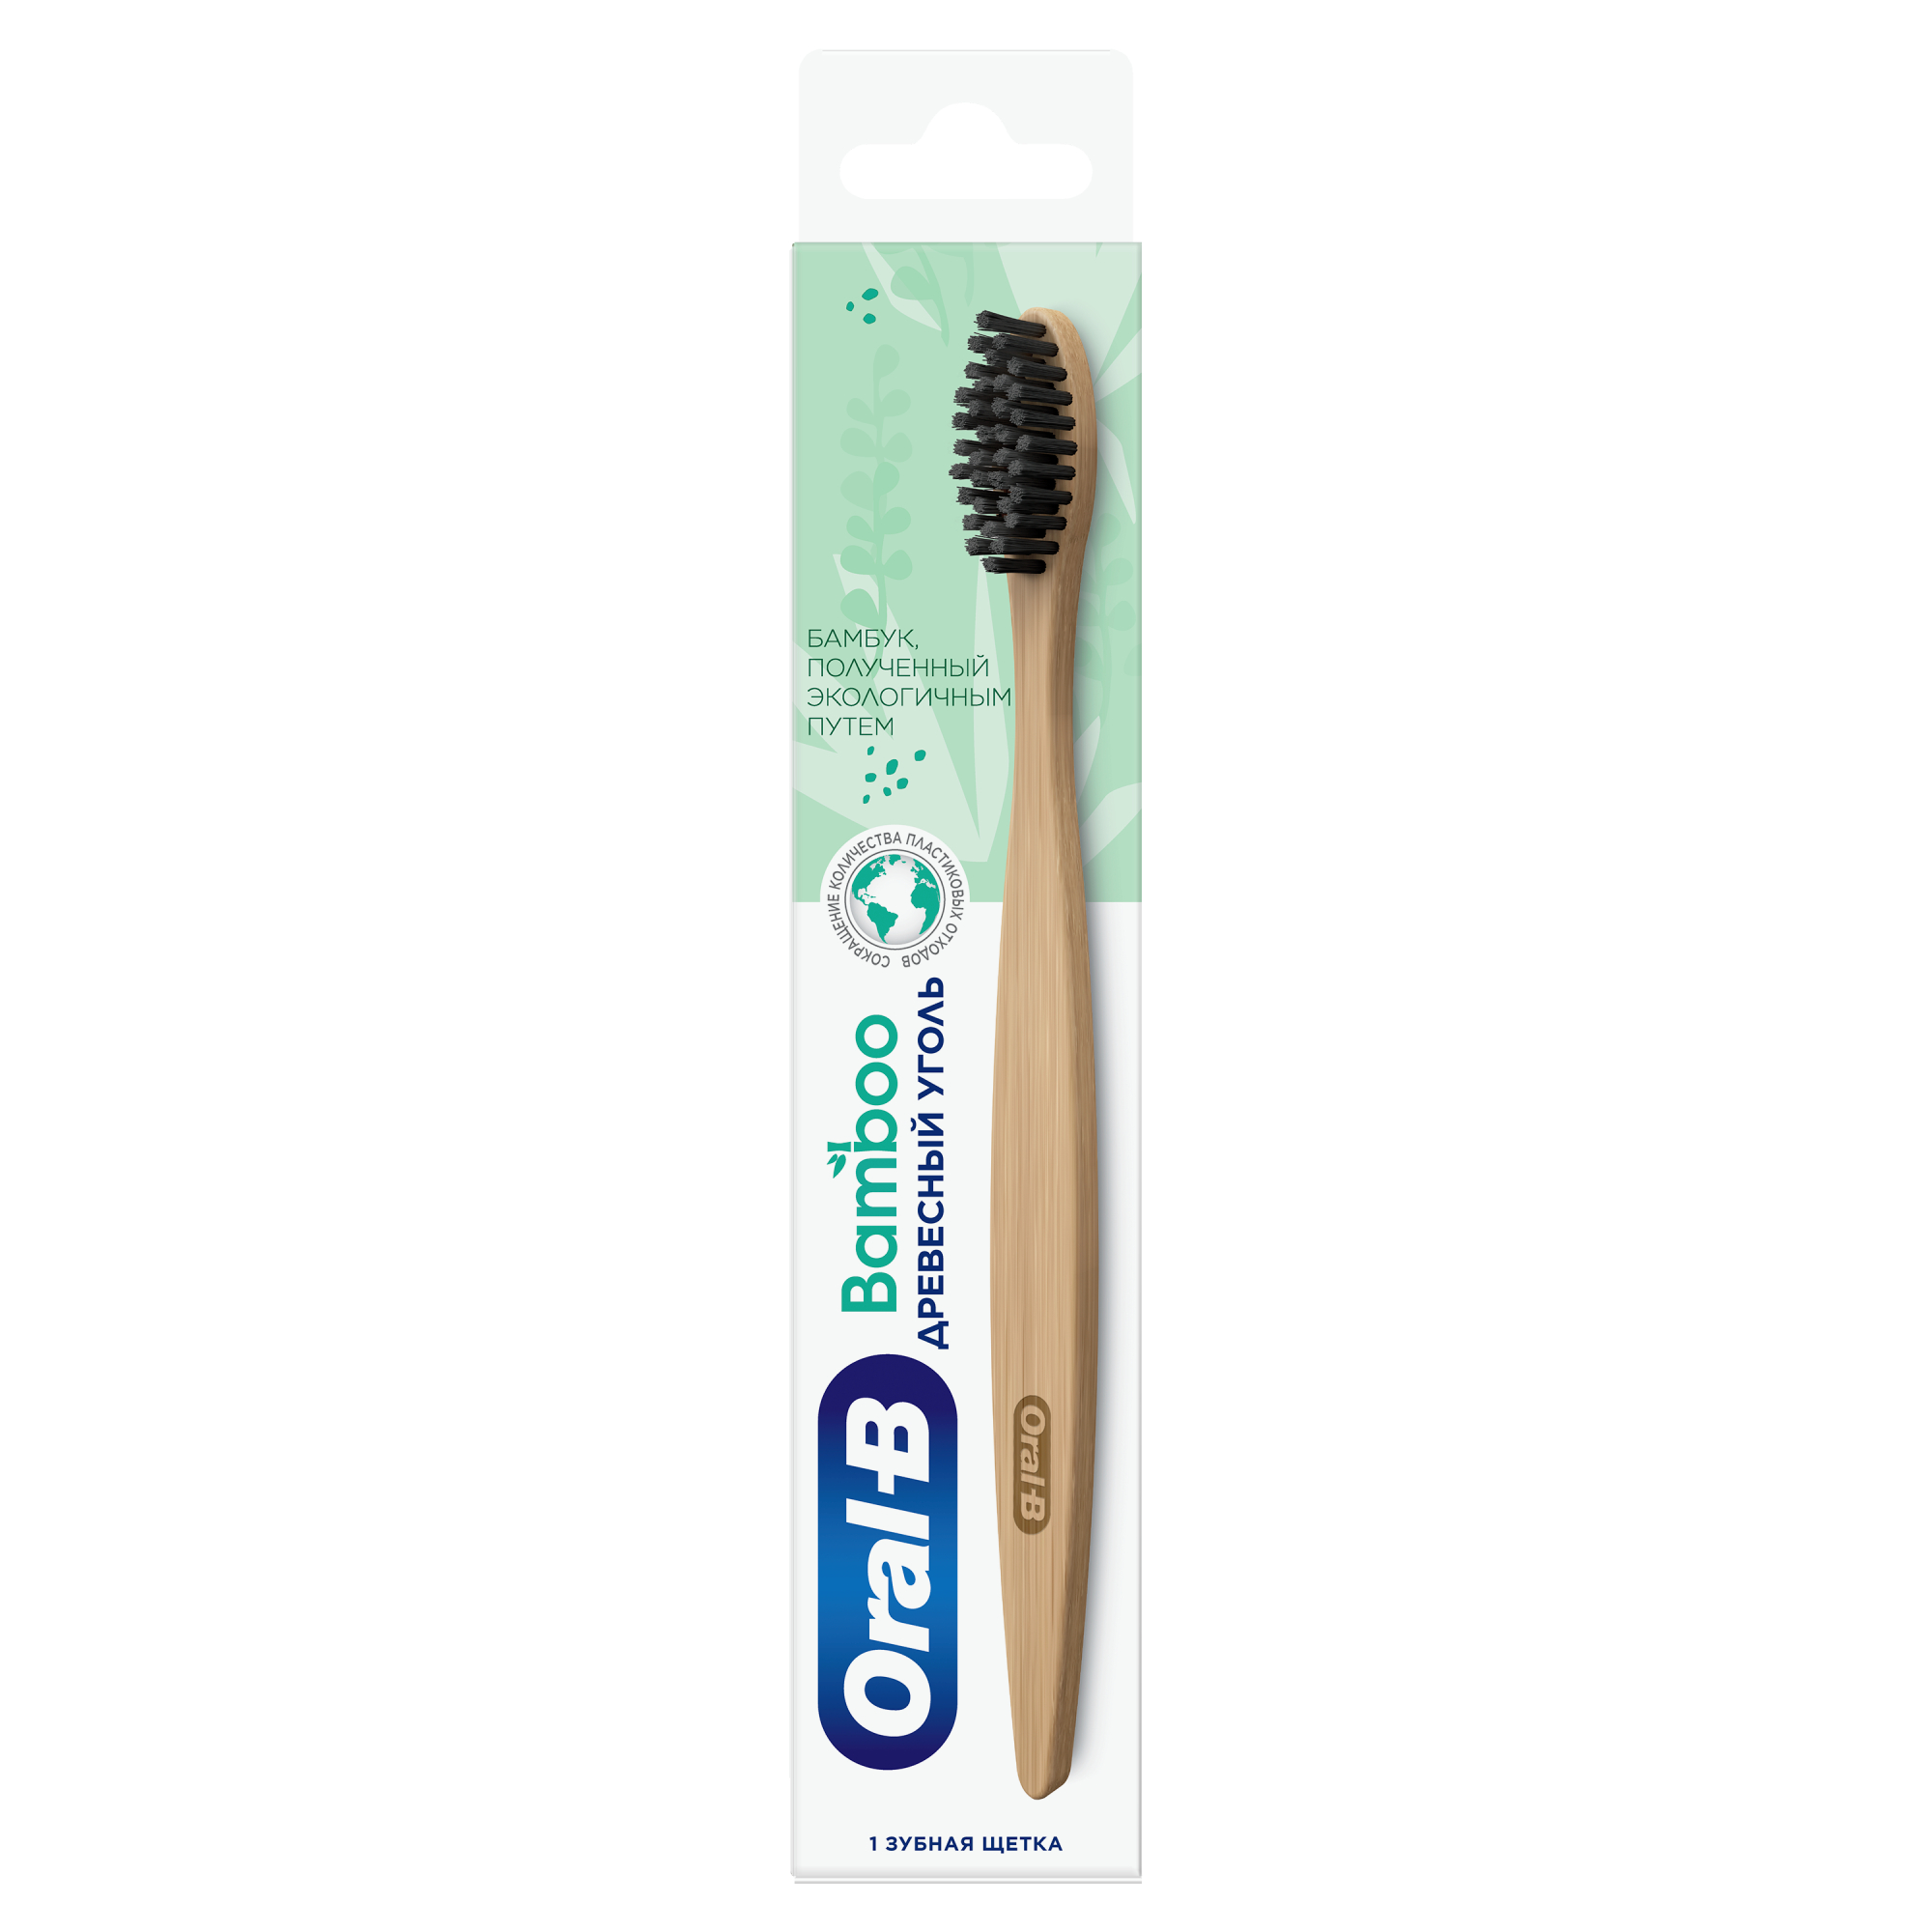 Зубная щетка Oral-B Bamboo Древесныйq Уголь из органического бамбука, мягкая, 1 шт oral b зубная щетка stages proexpert мягкая